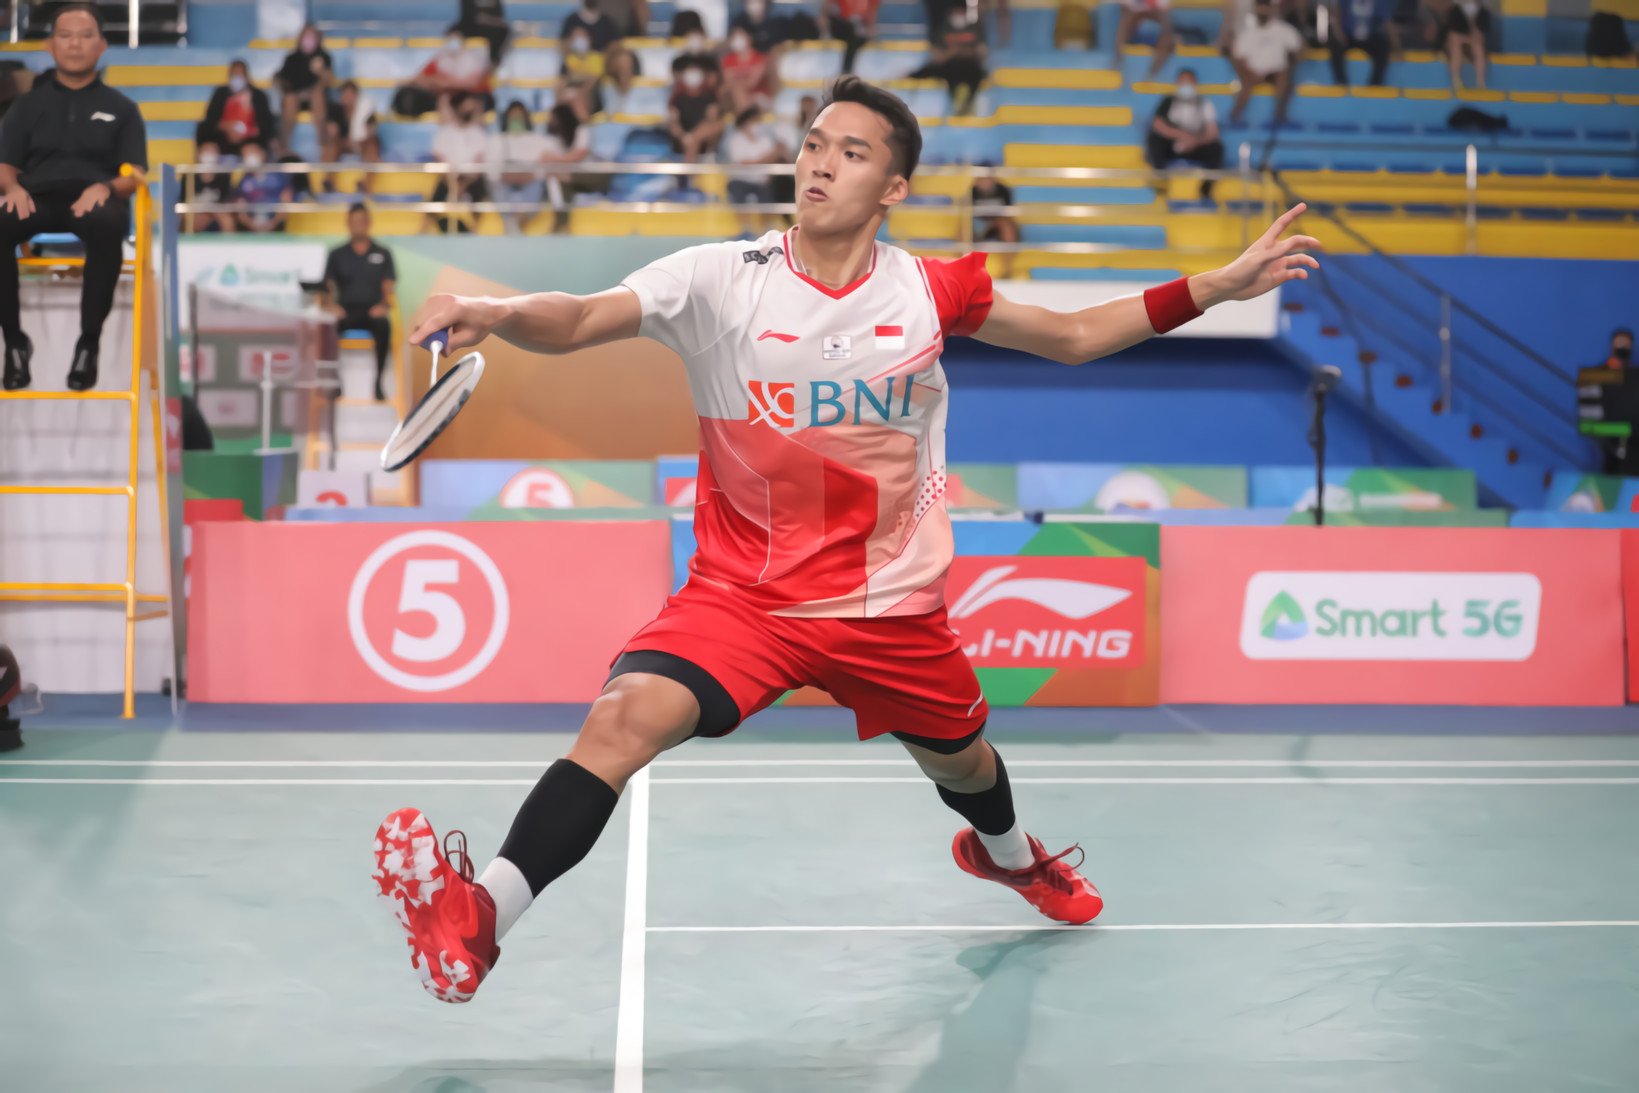 Jadwal Badminton Asia Championship 2022 Hari Ini: 13 Wakil Indonesia Tampil, Banyak Big Match